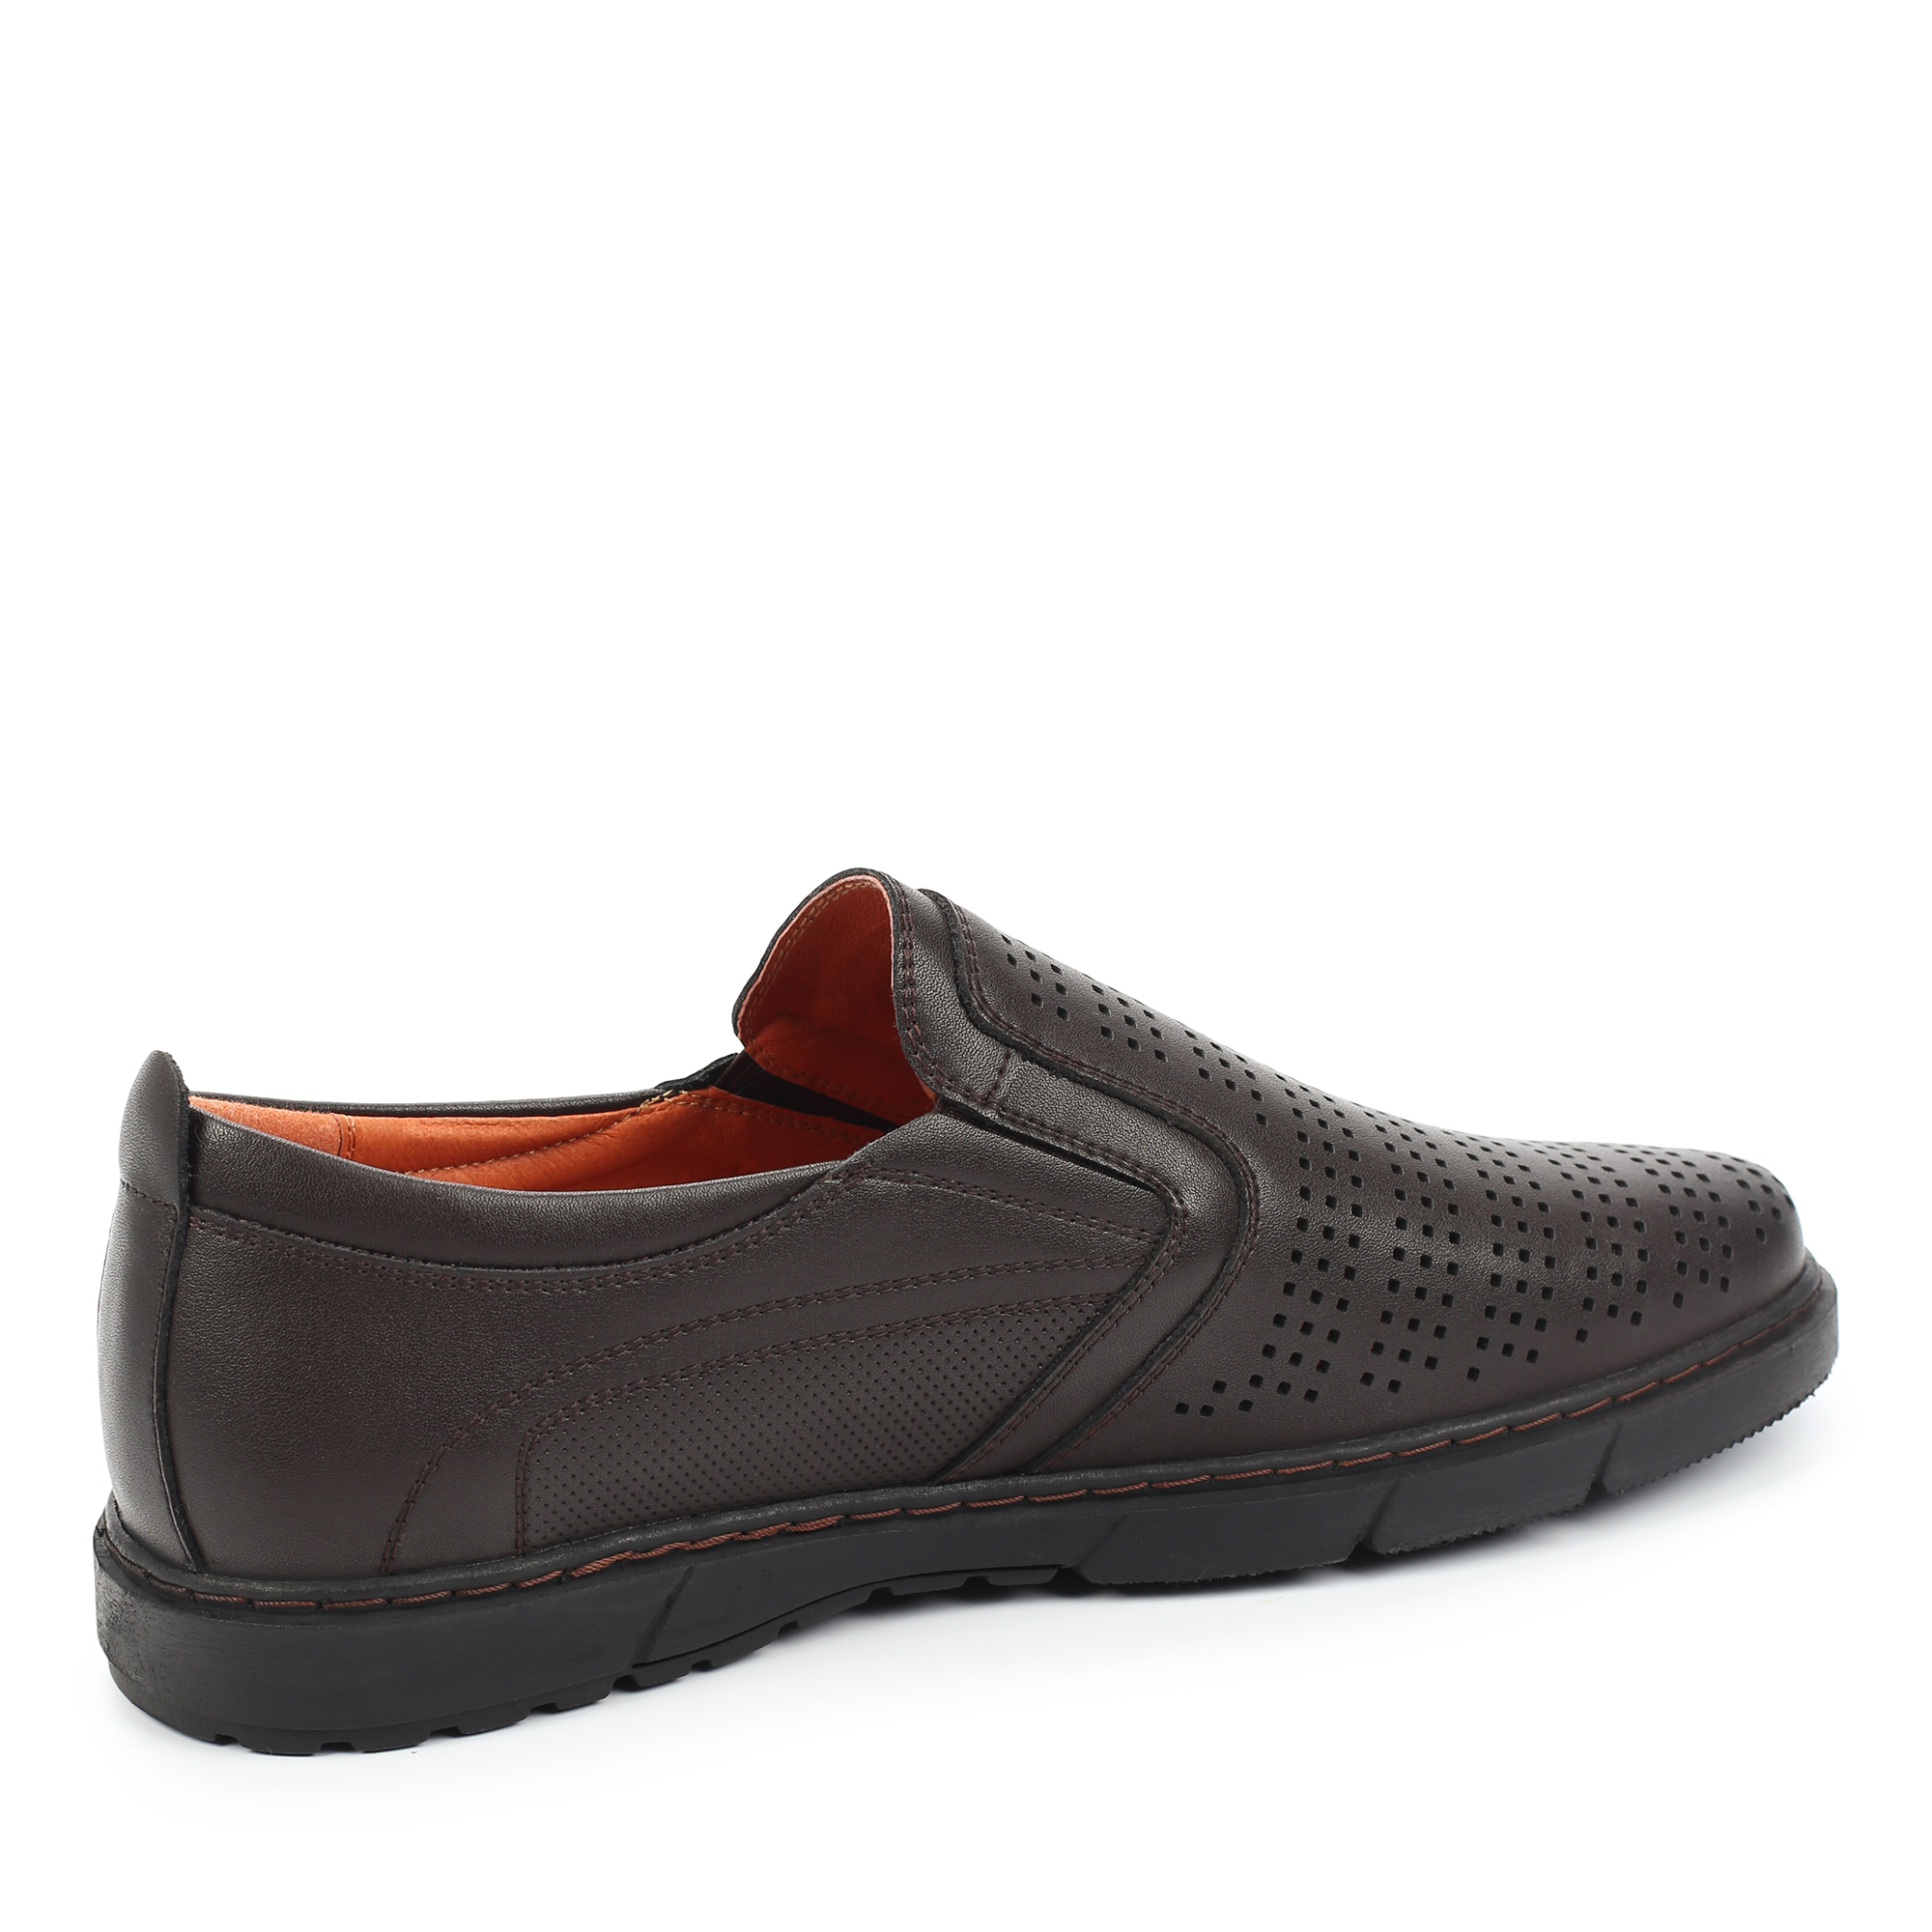 Туфли/полуботинки MUNZ Shoes 104-612A-1609, цвет темно-коричневый, размер 40 - фото 3